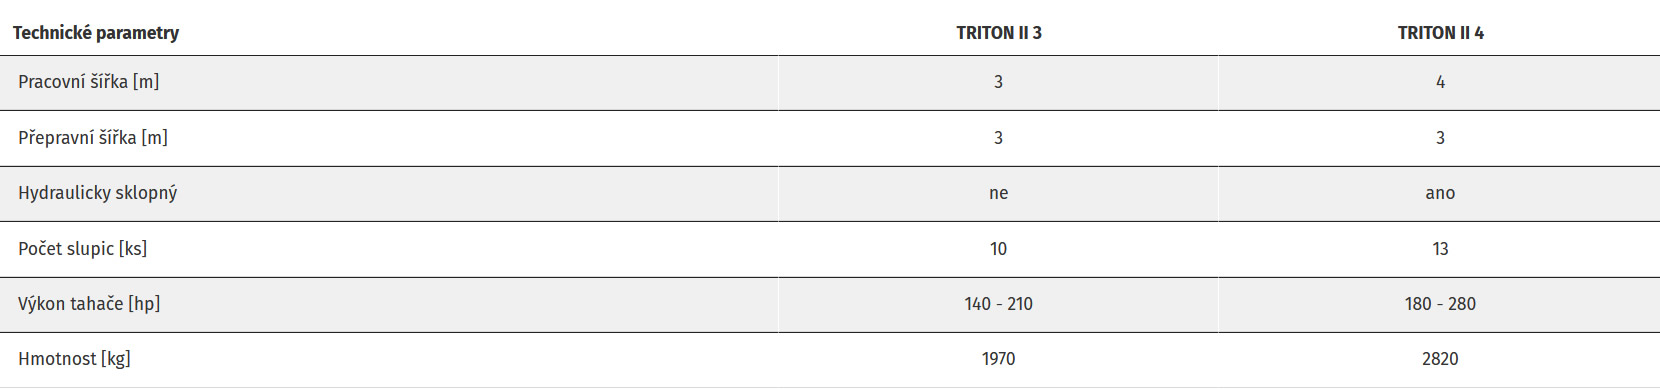 TRITON II